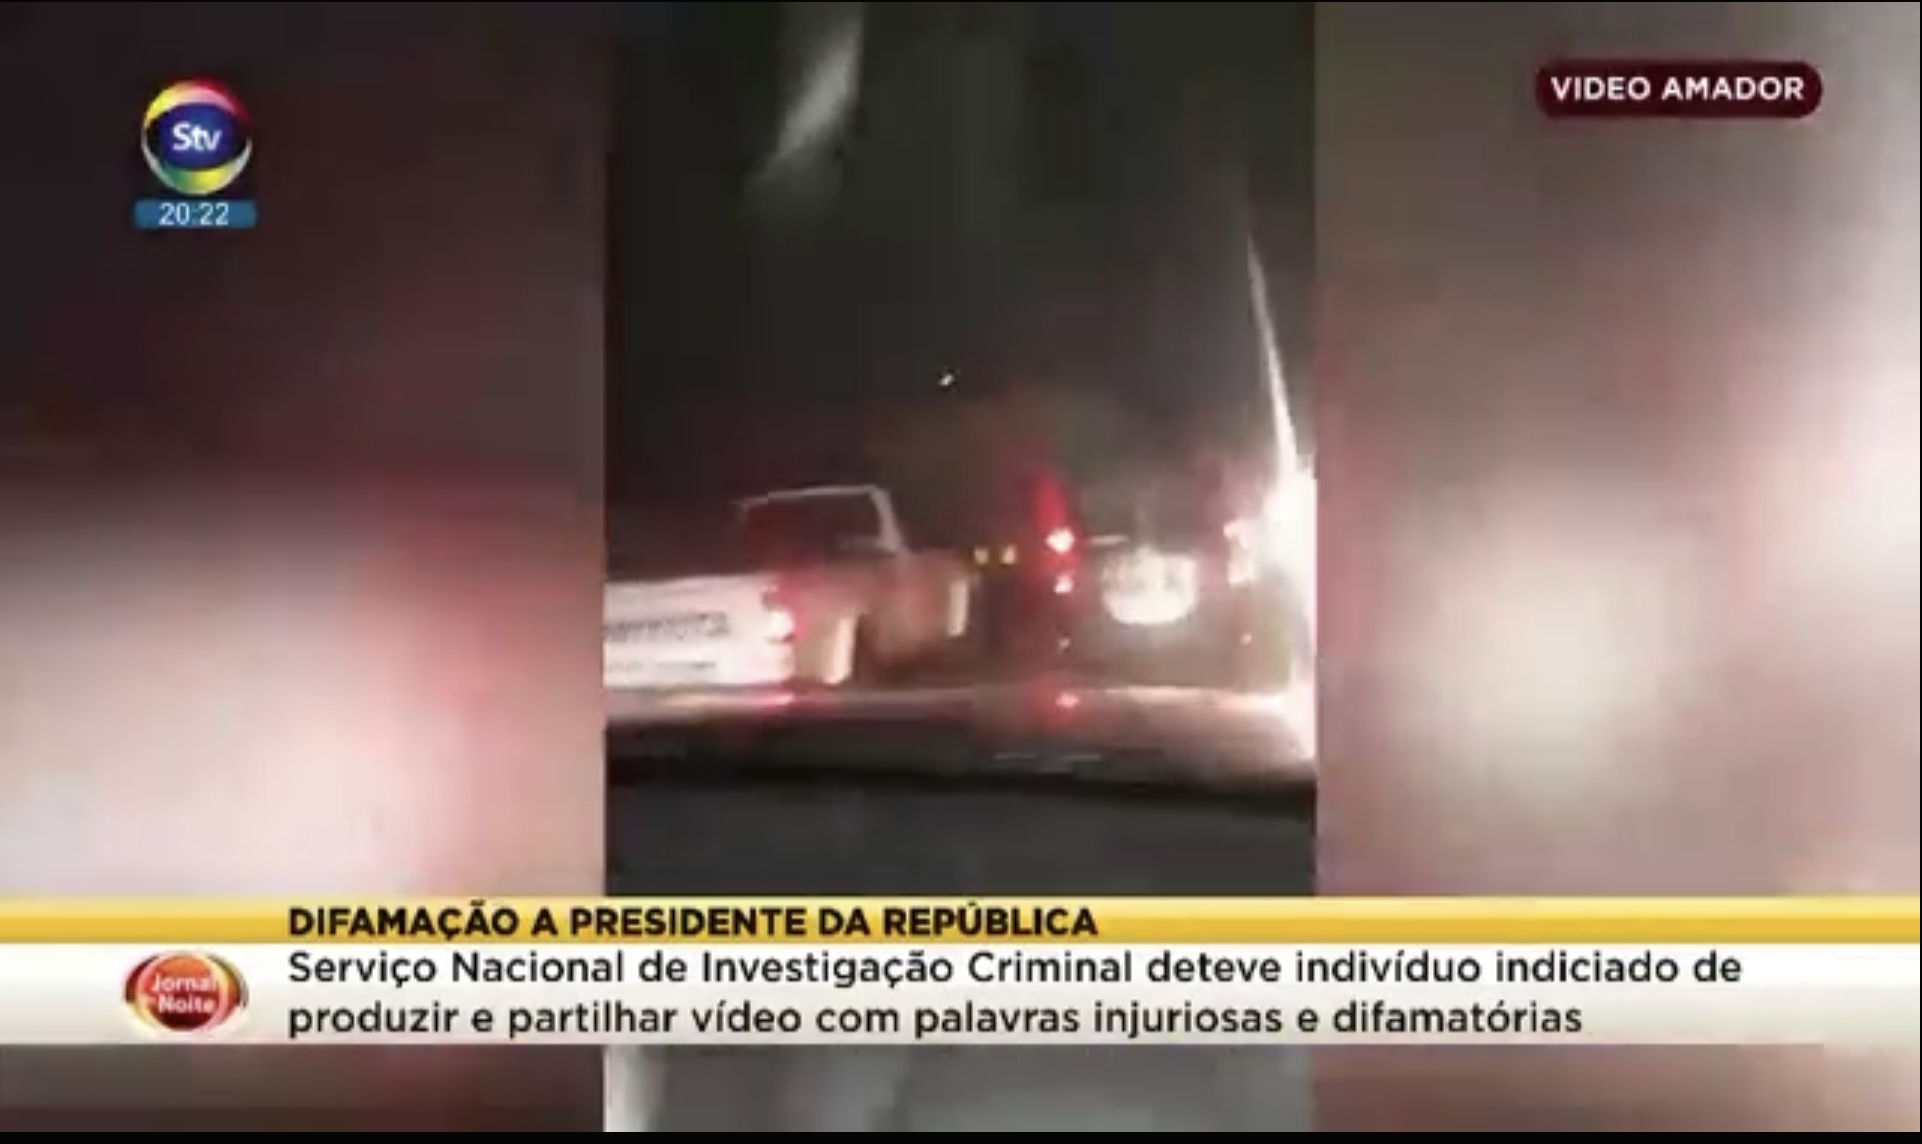 Le reportage est arrêté sur une image floue, tirée d'une vidéo amateur prise dans les embouteillages.